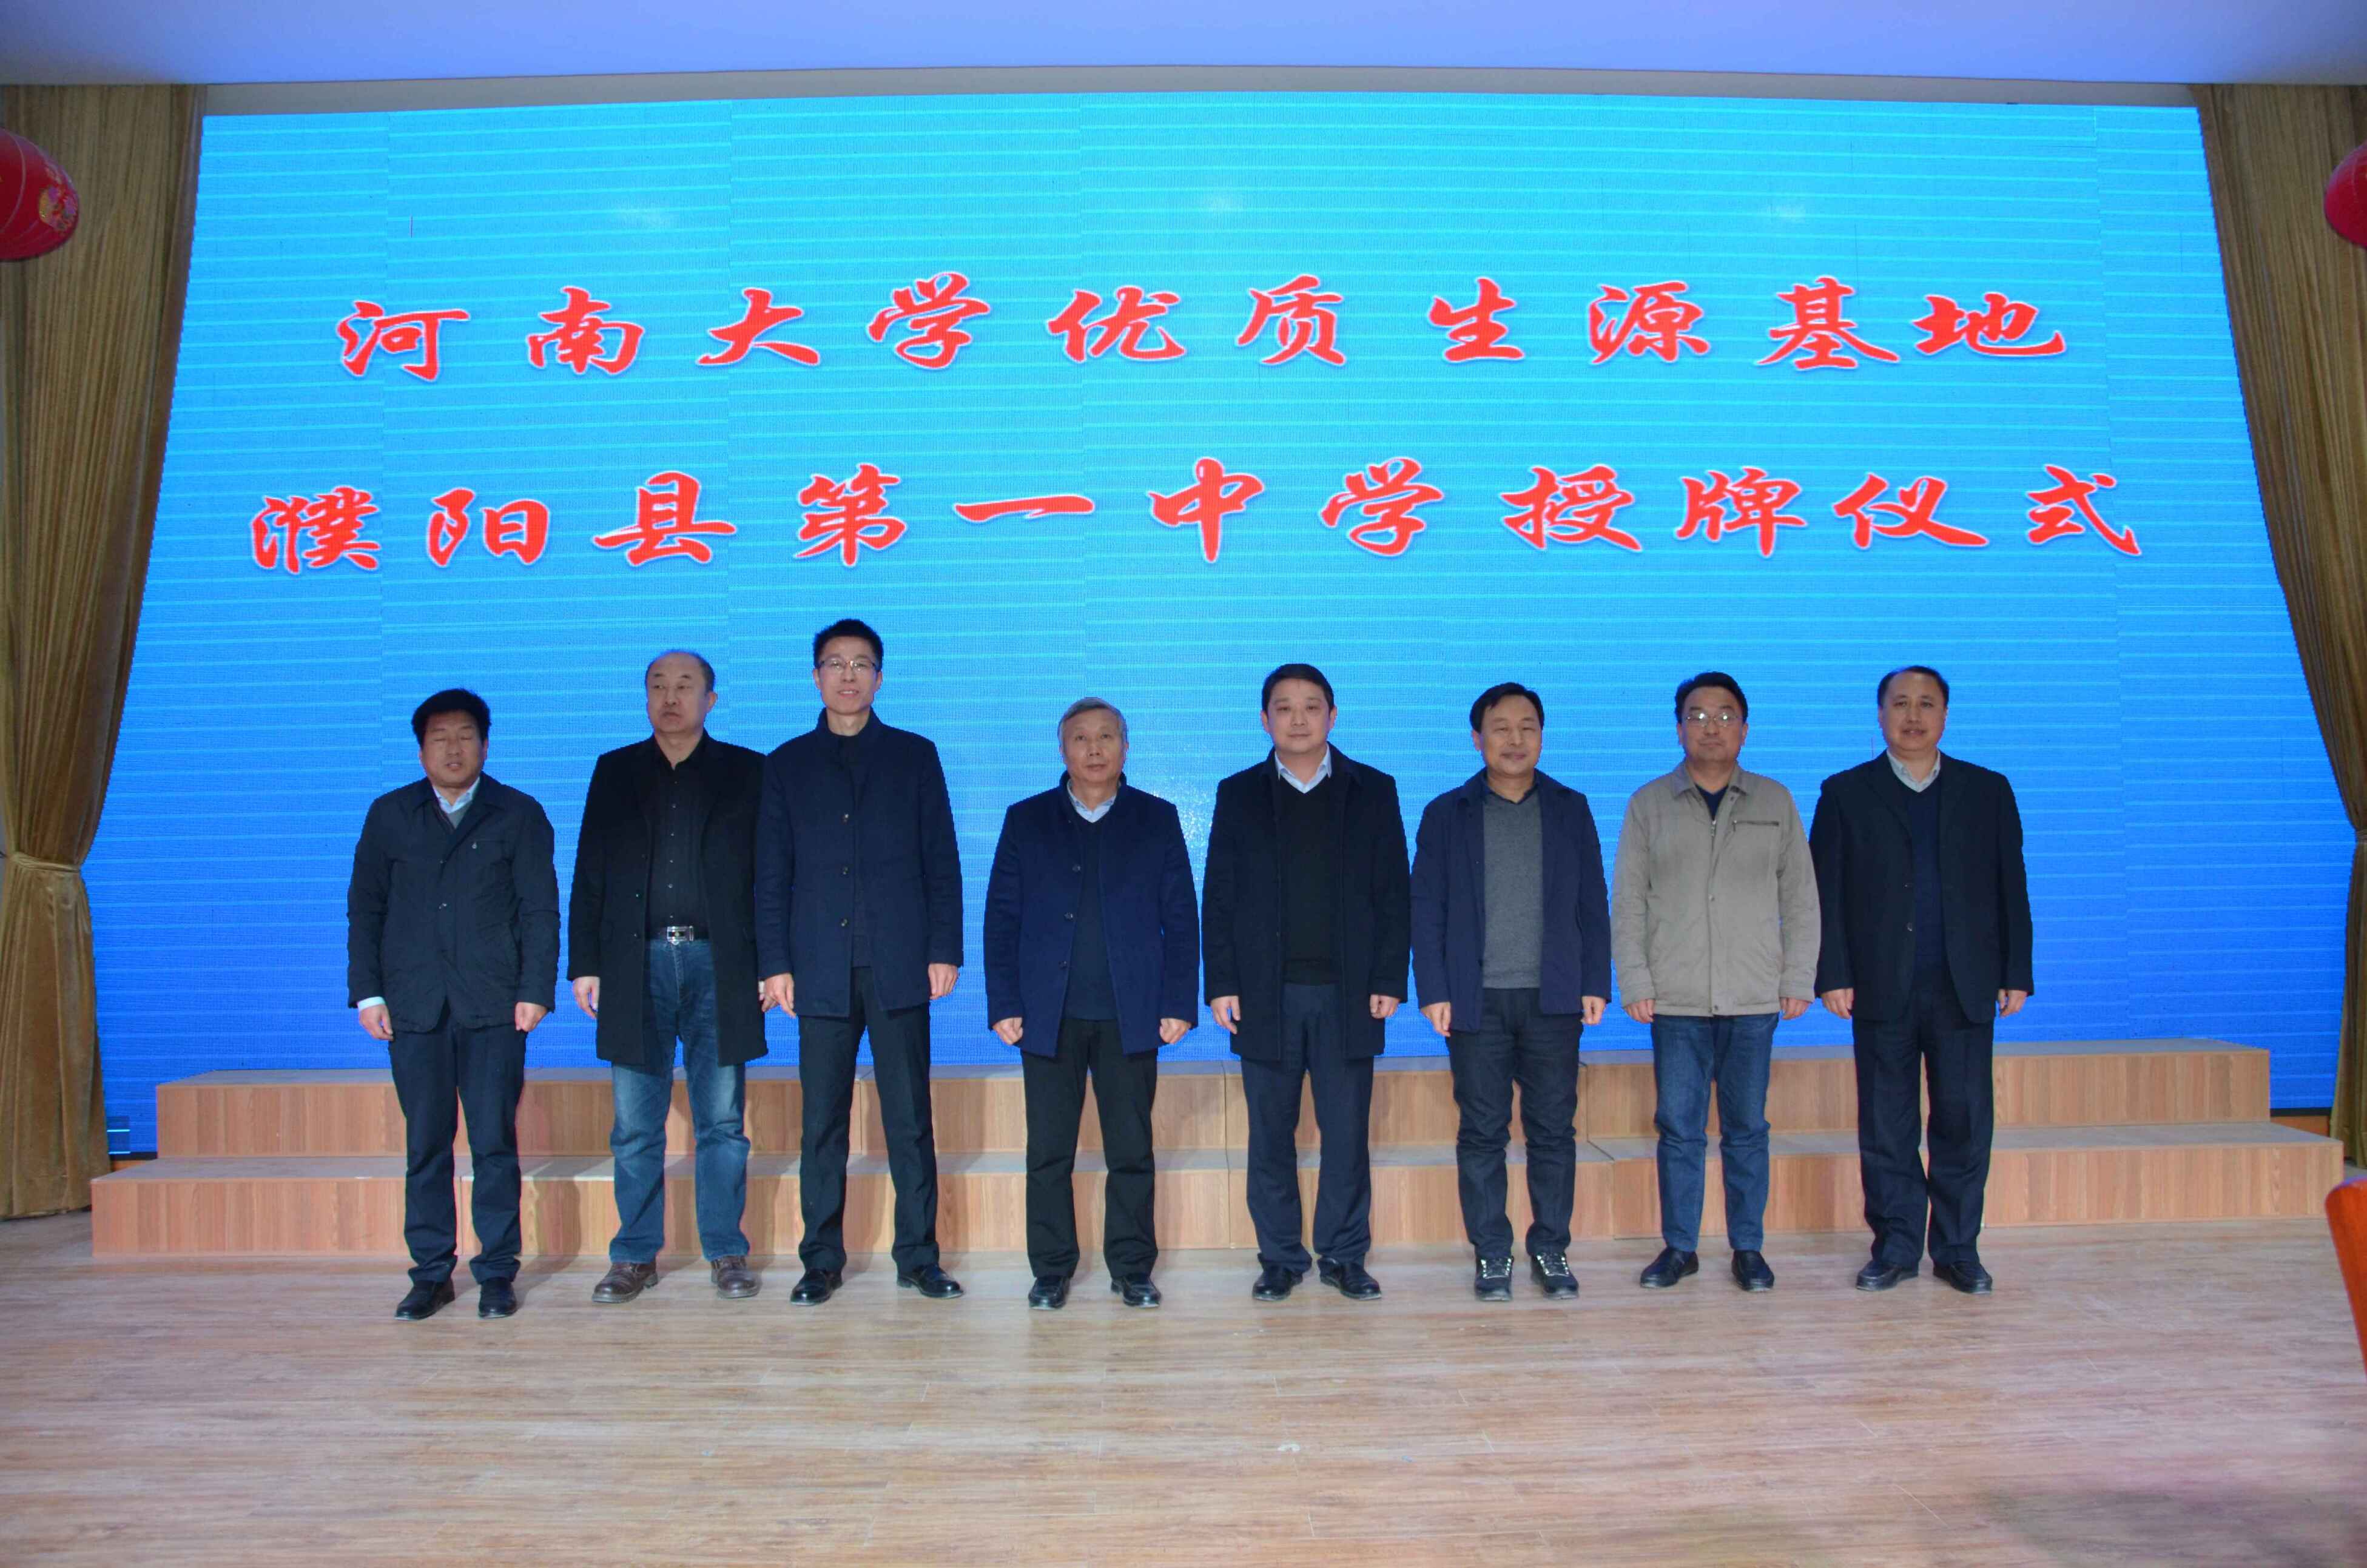 濮阳县一中举行"河南大学优质生源工程建设"授牌签约仪式